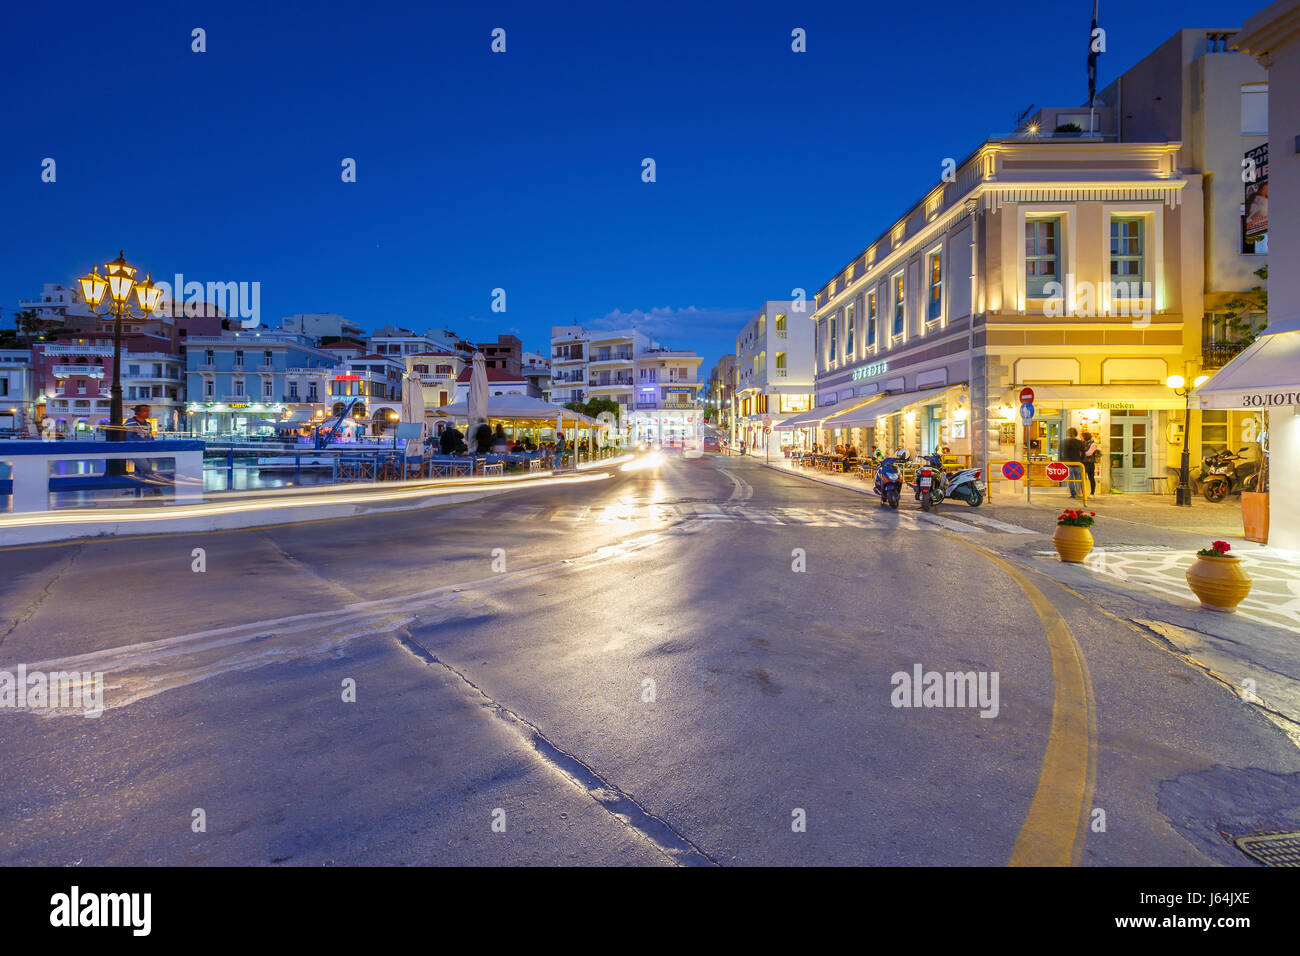 Voir la soirée des agios Nikolaos et de son port, Crète, Grèce. Banque D'Images